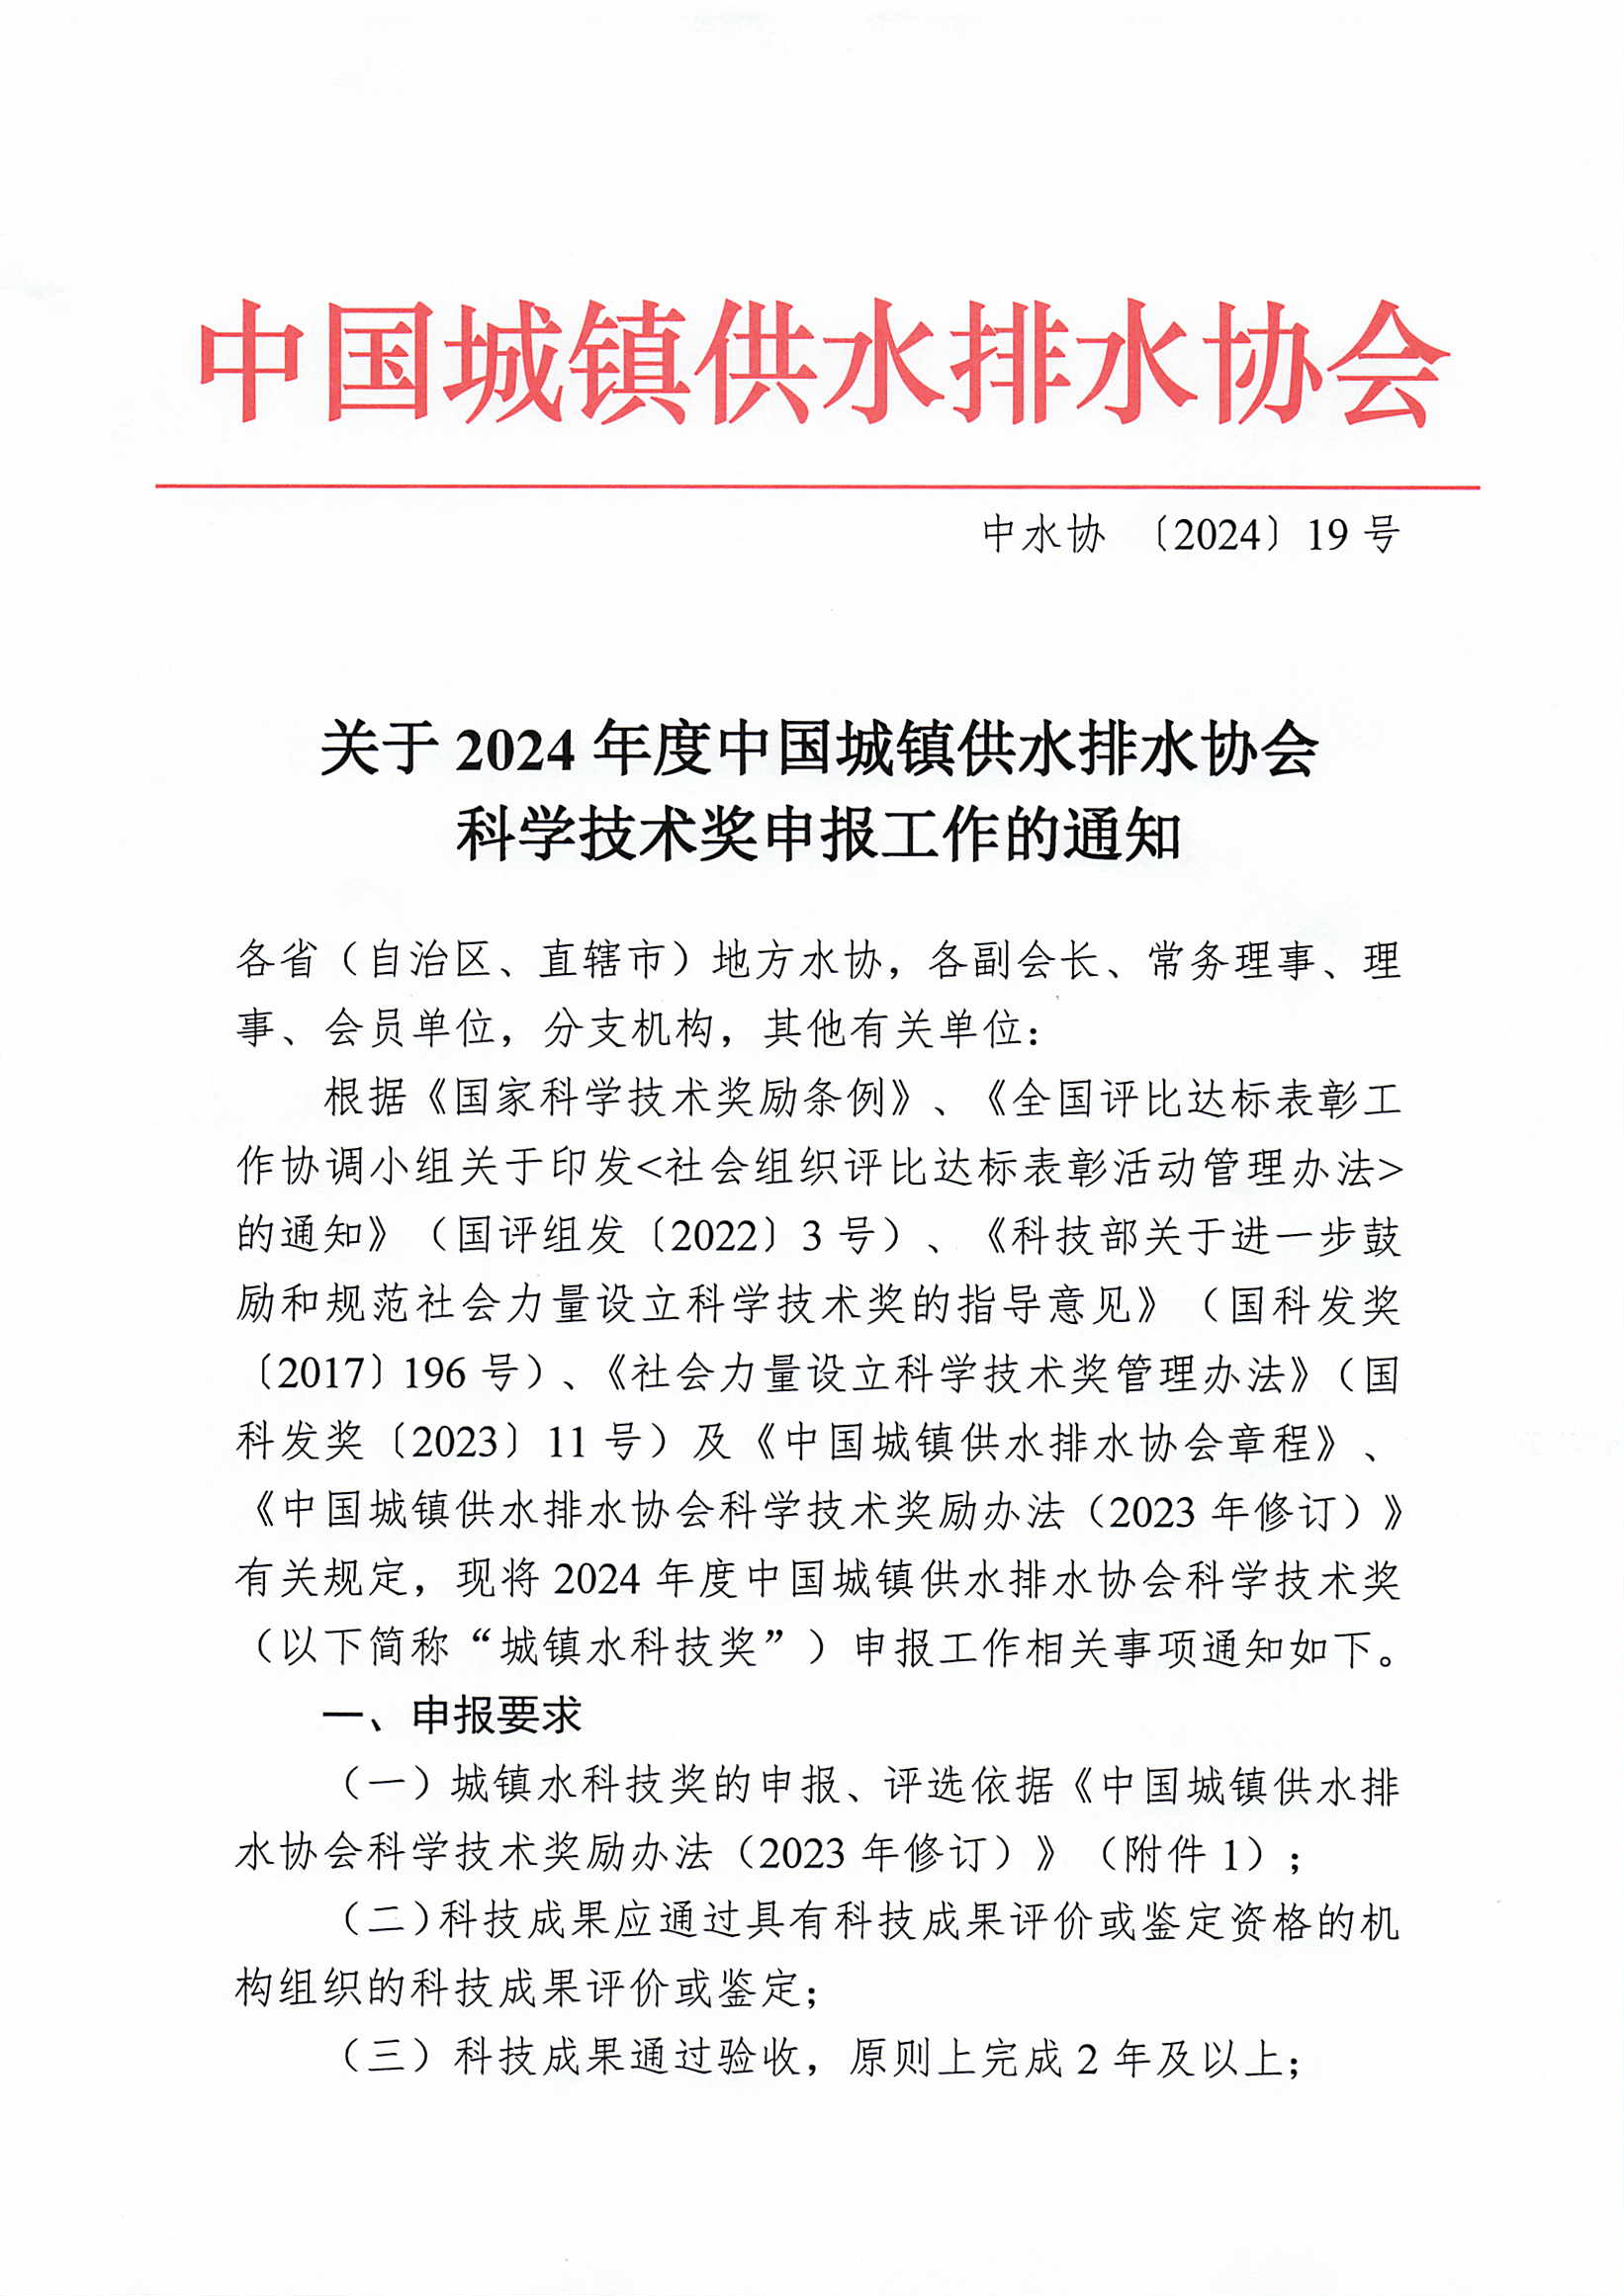 關于2024年度中國城鎮供水排水協會科學技術獎申報工作的通知_頁面_1.jpg